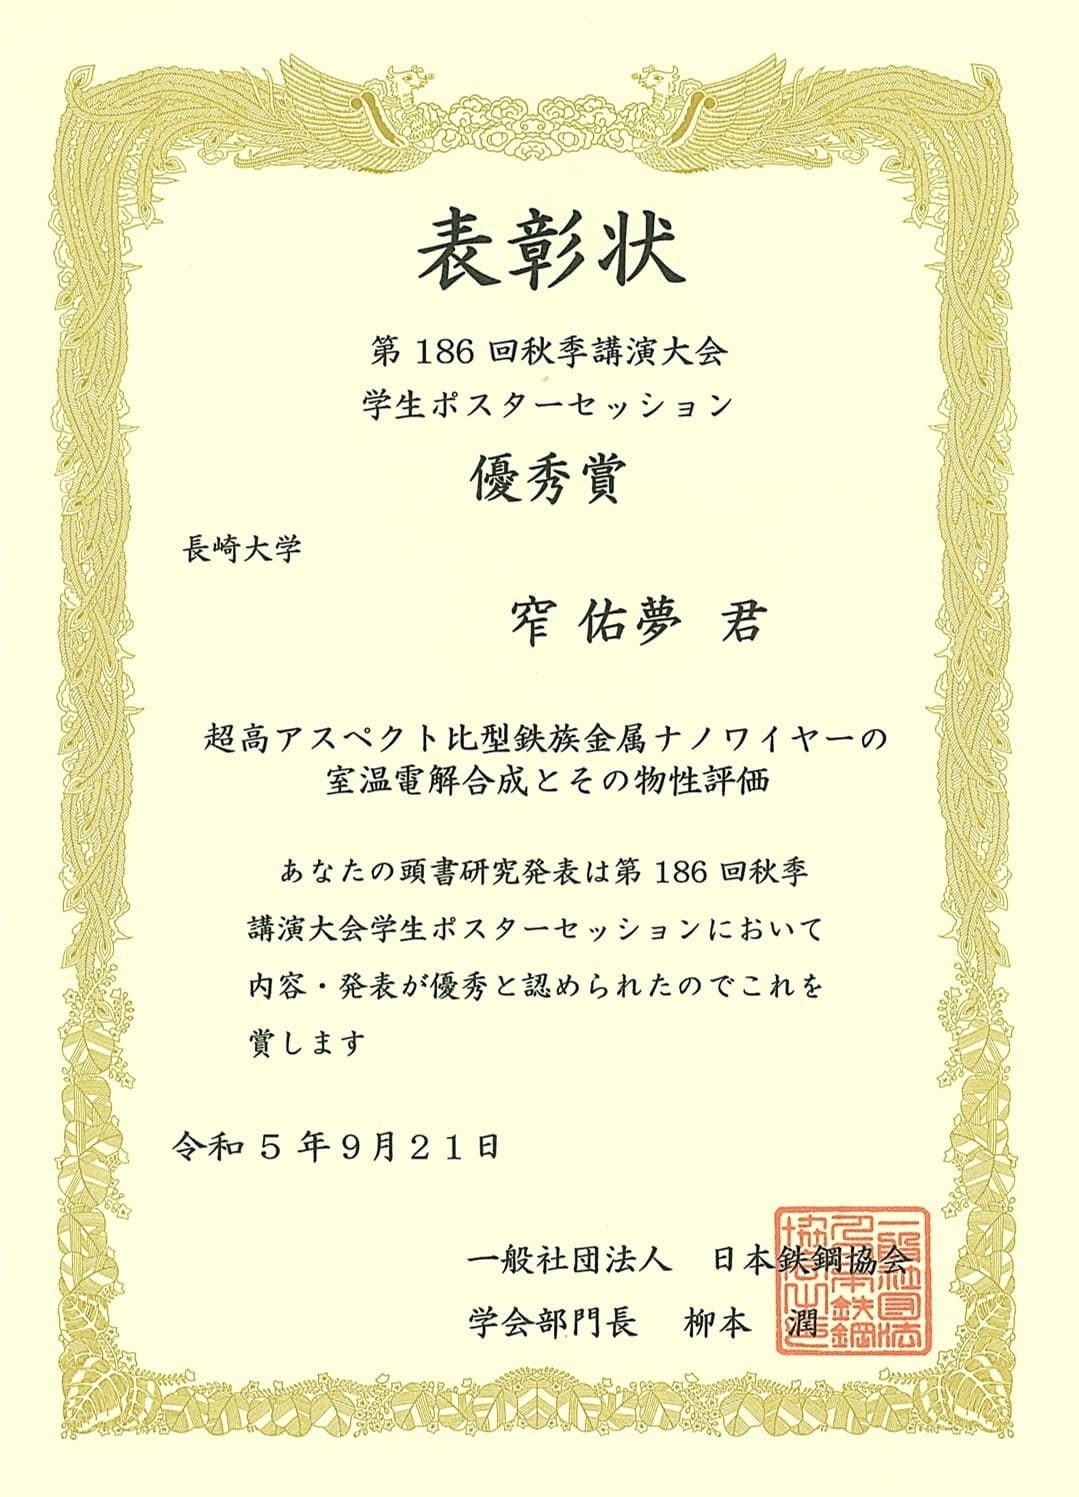 窄佑夢さん（M2）が、日本鉄鋼協会第186回秋季講演大会学生ポスターセッションにおいて優秀賞を受賞しました。2023/09/21